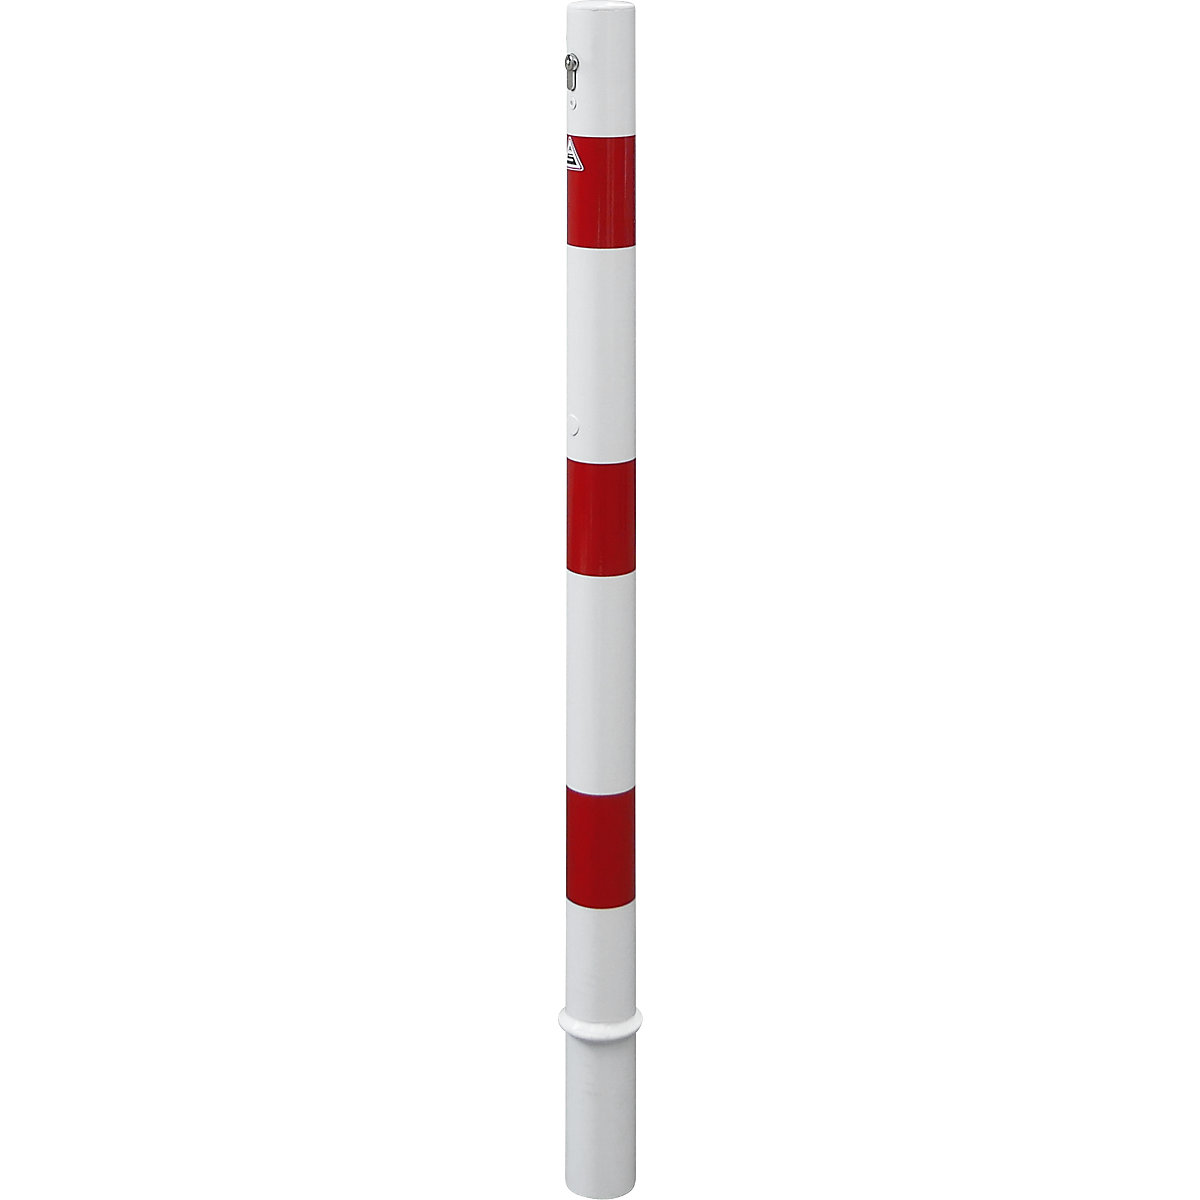 Zahradzovací stĺpik, Ø 60 mm, biela/červená